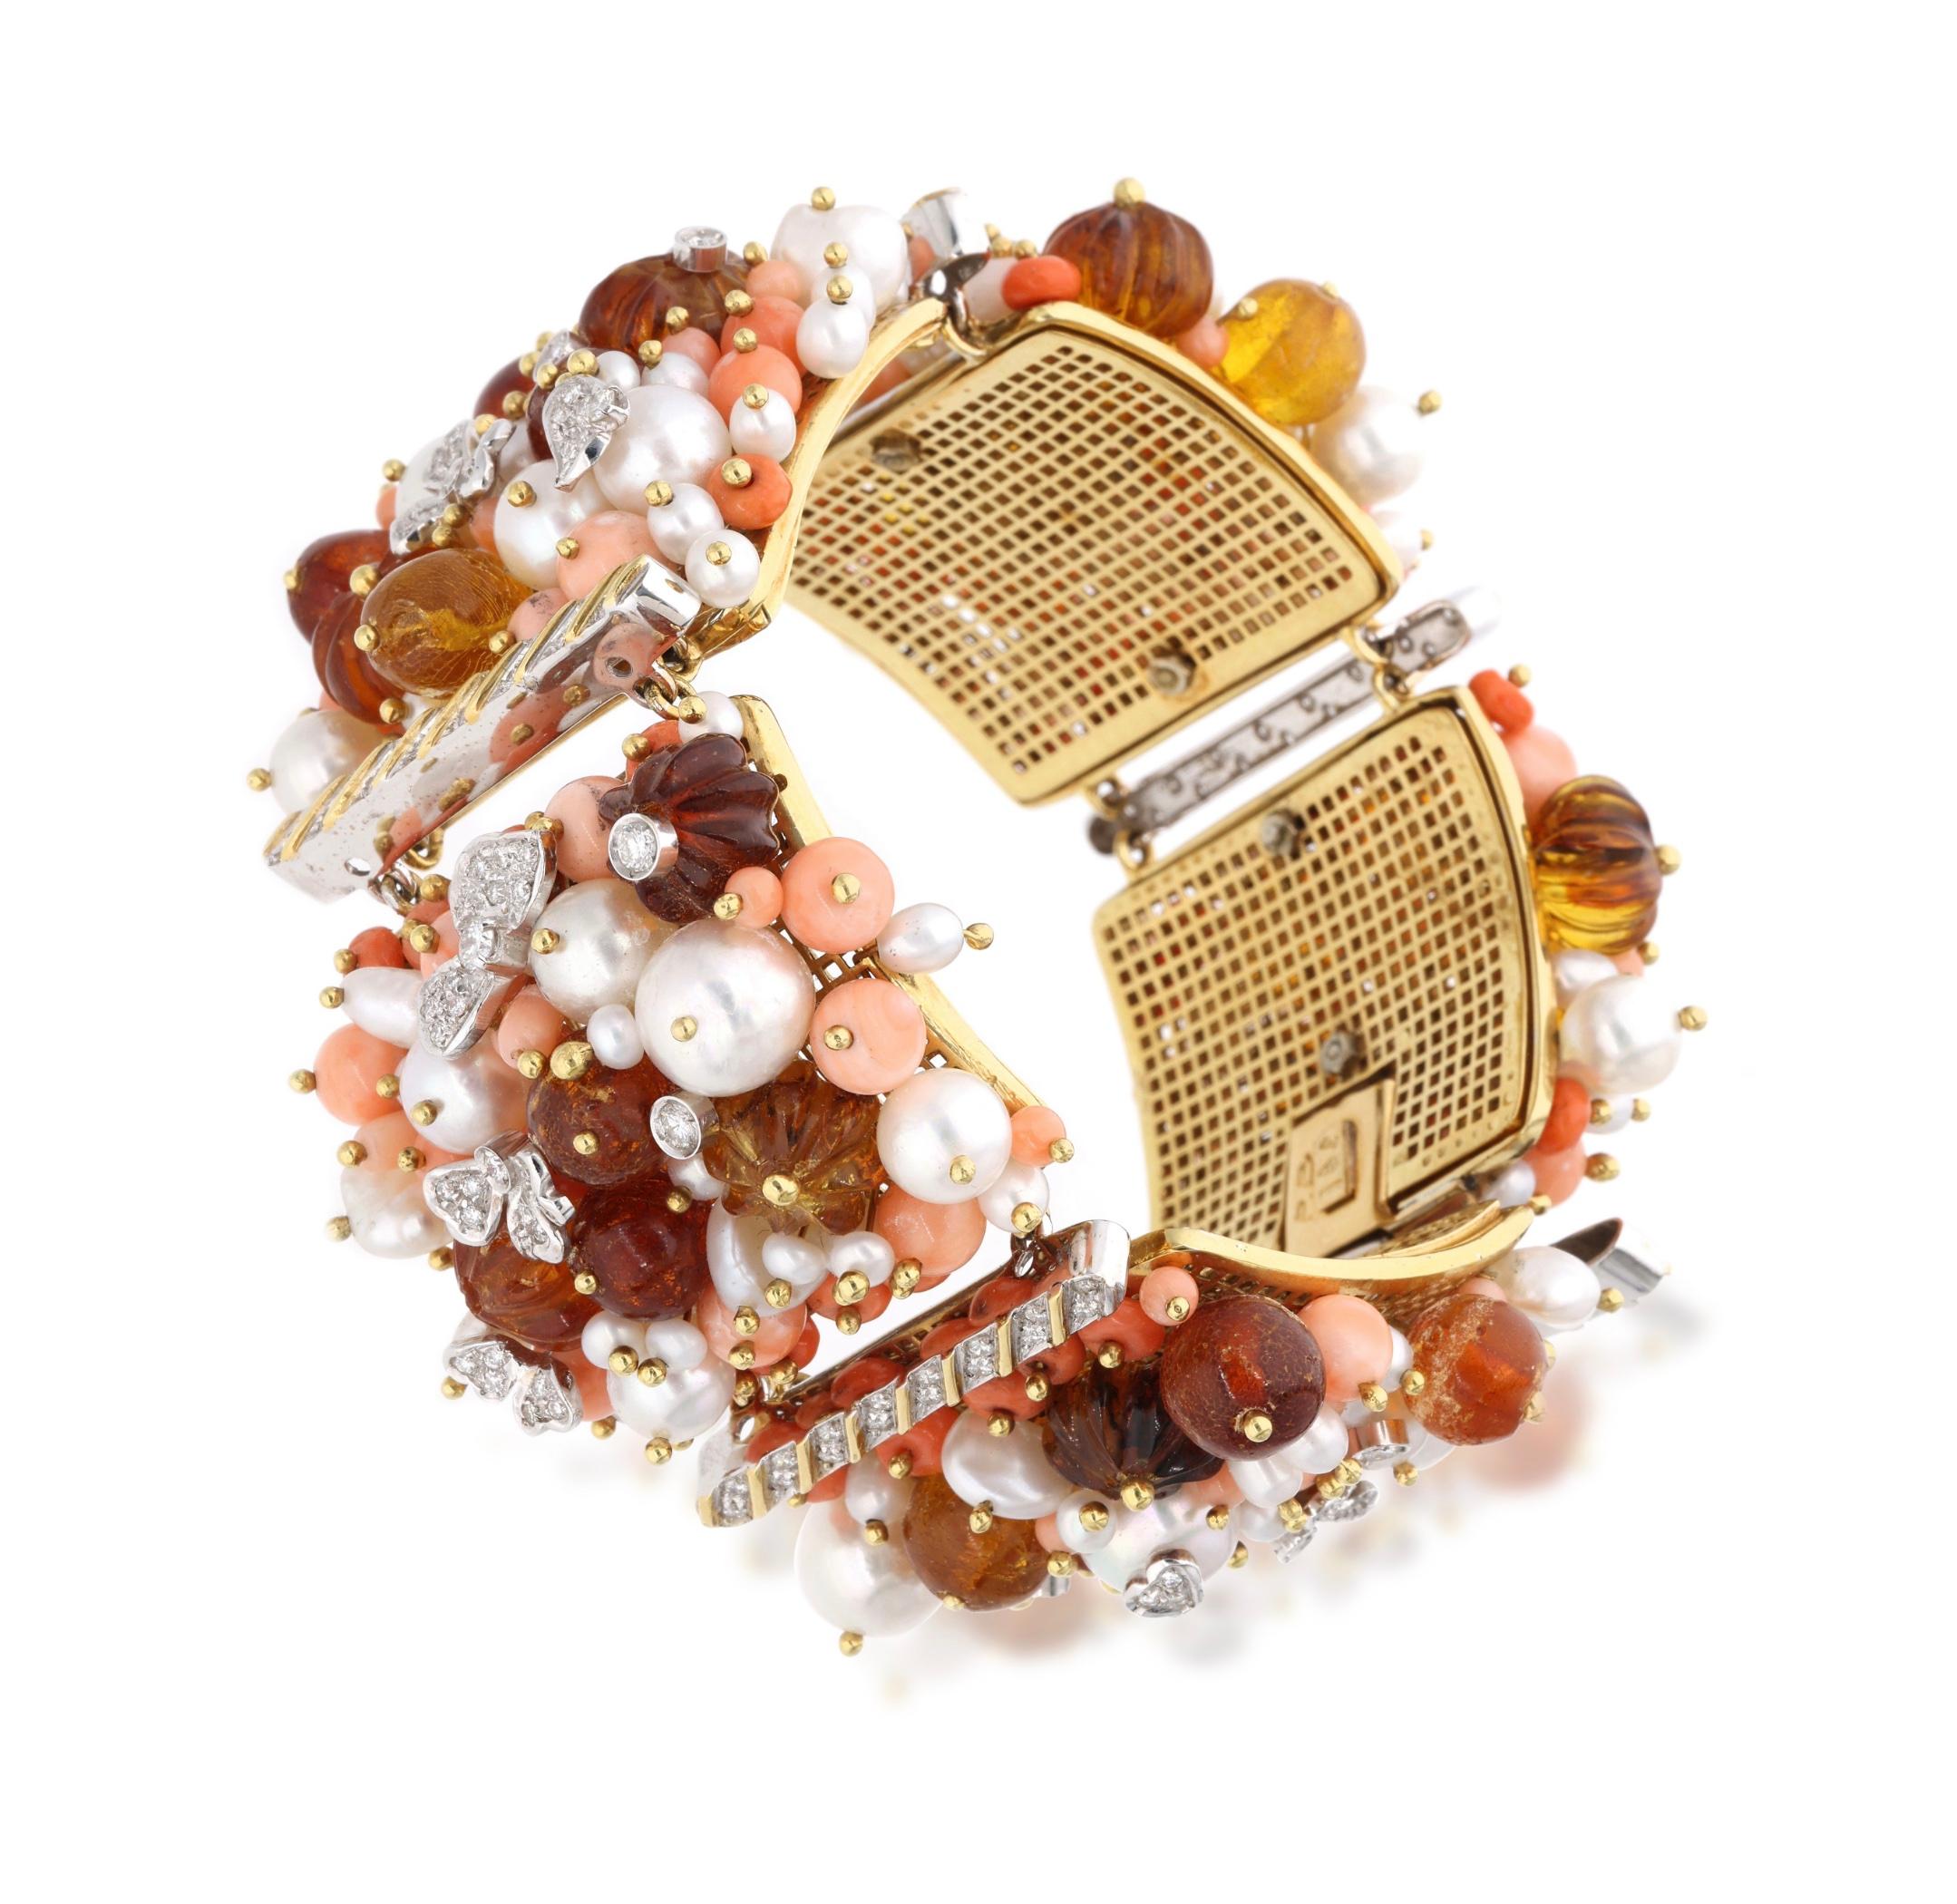 Composé de perles de corail rose, de perles d'ambre et de perles de culture, accentué par des diamants ronds.

- Les diamants pèsent au total environ 1,30 carat.
- Or jaune et or blanc 18 carats
- Poids total 148,96 grammes
- Longueur 7,5